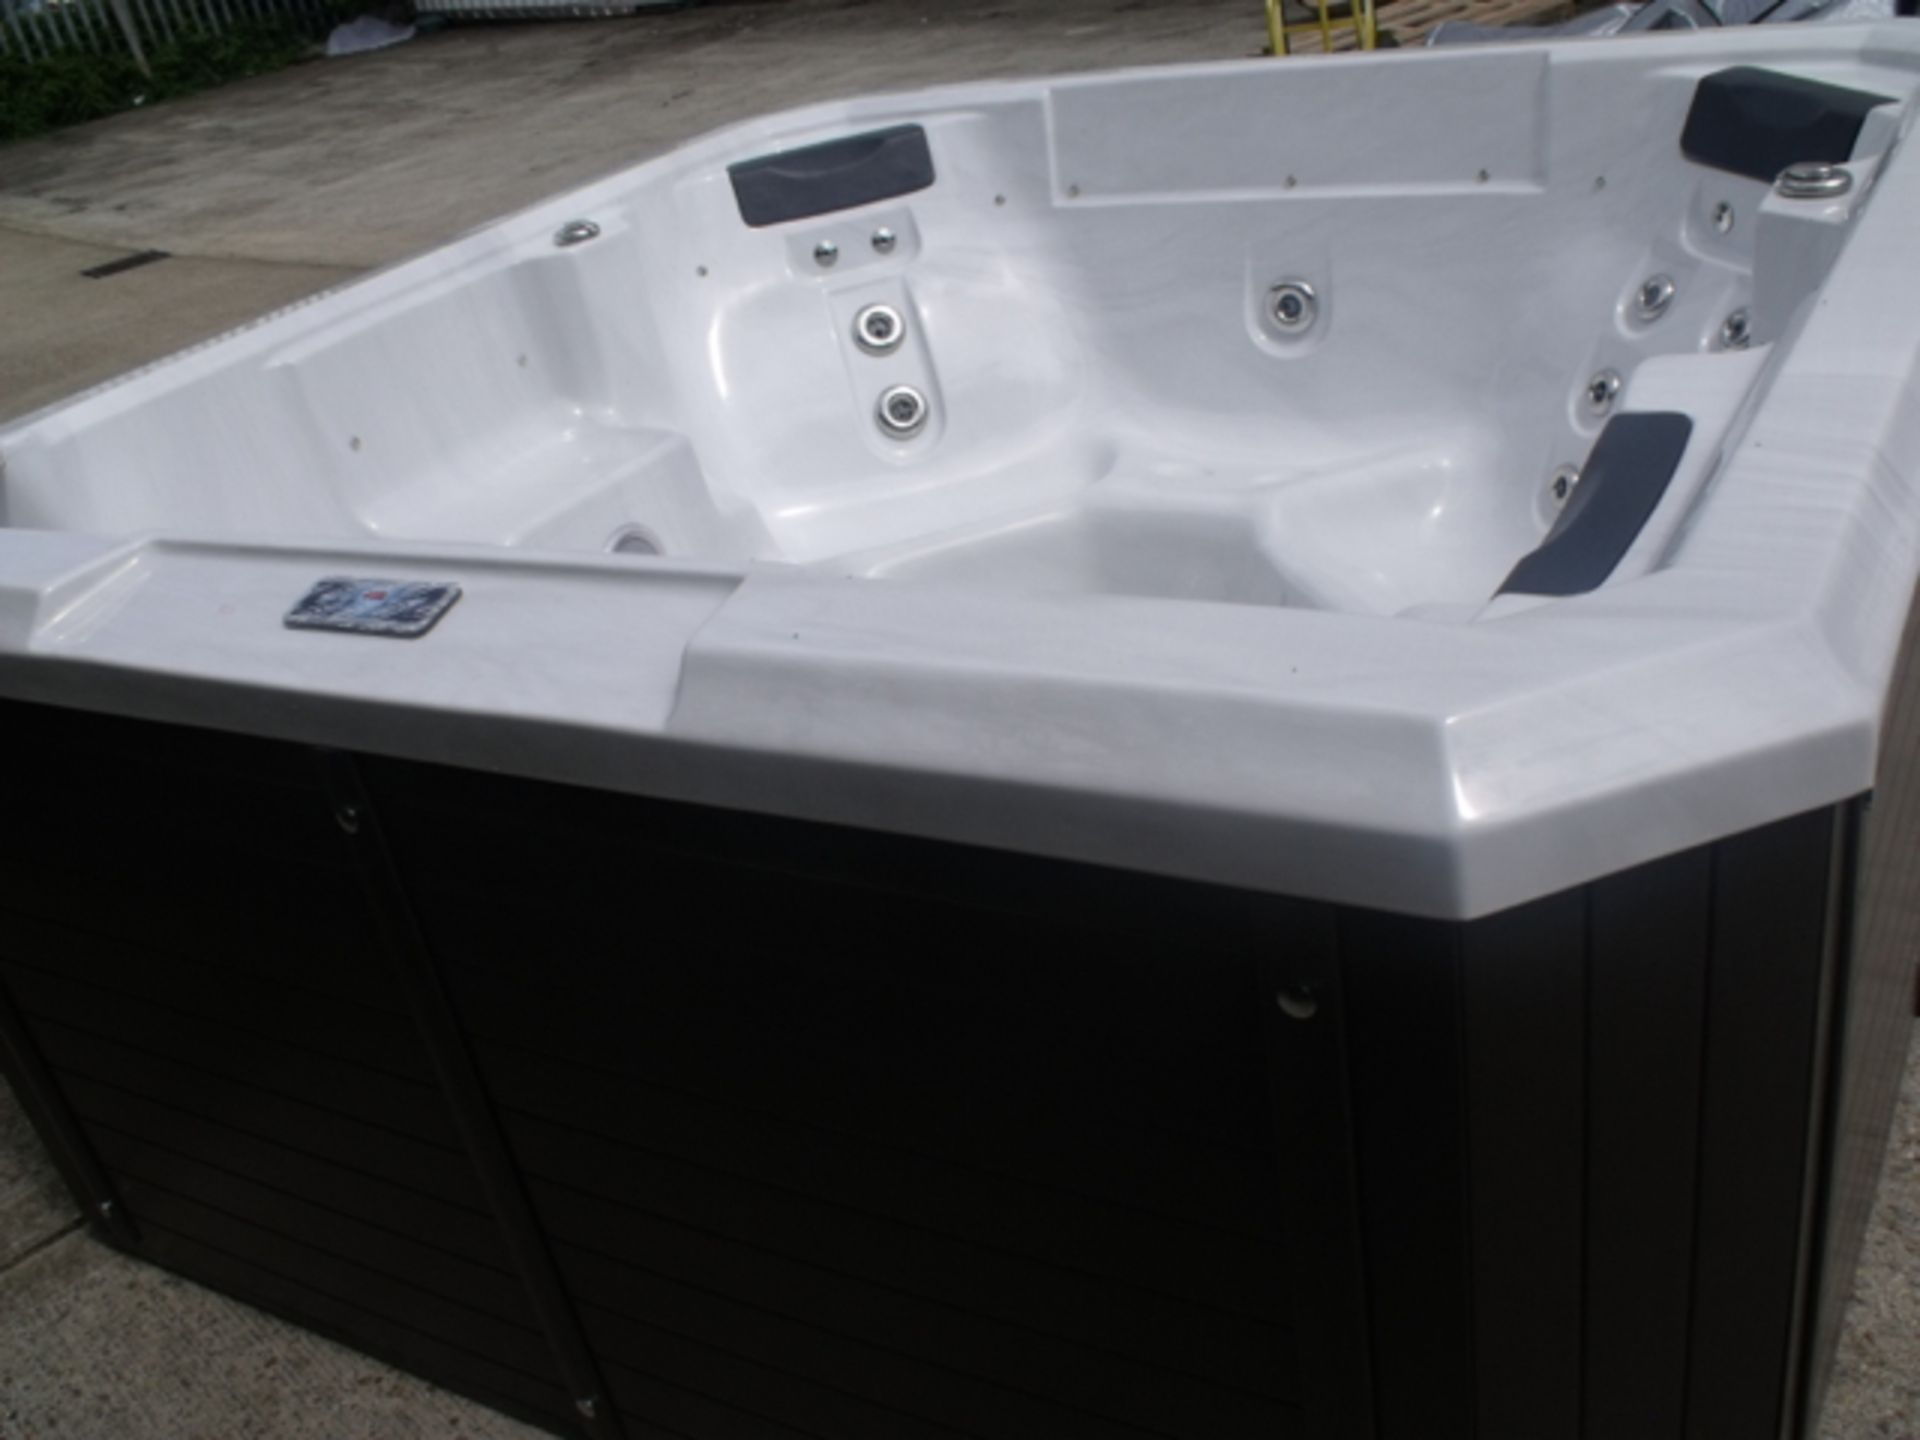 Brand New 2015 Executive Range Hot Tub. - Image 4 of 8